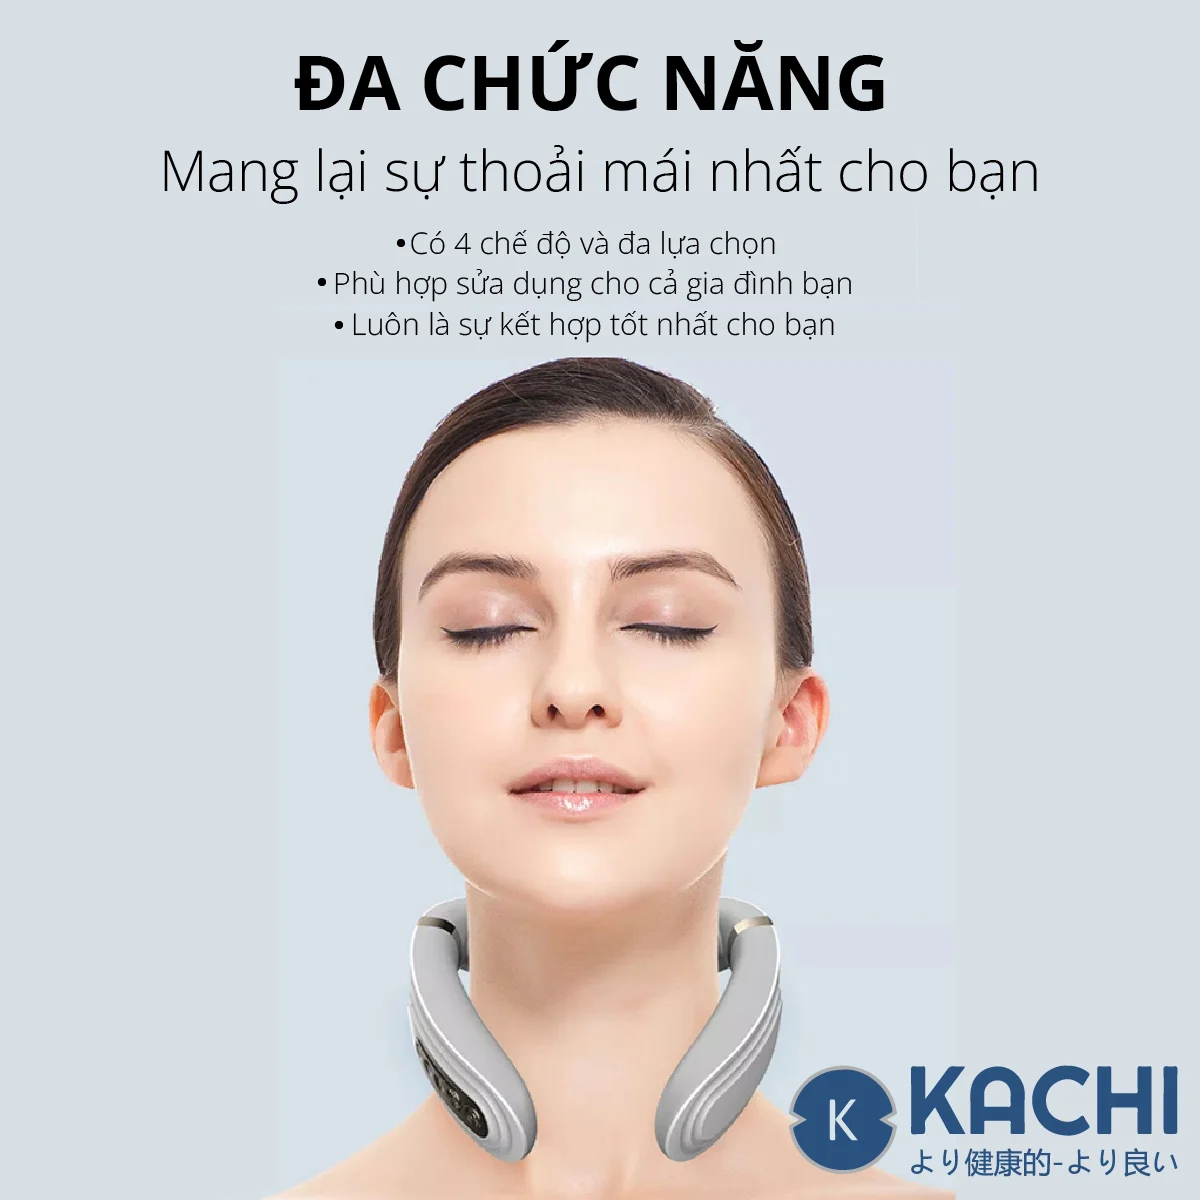 Máy massage cổ không dây 10 đầu rung nhiệt cao cấp Kachi MK350